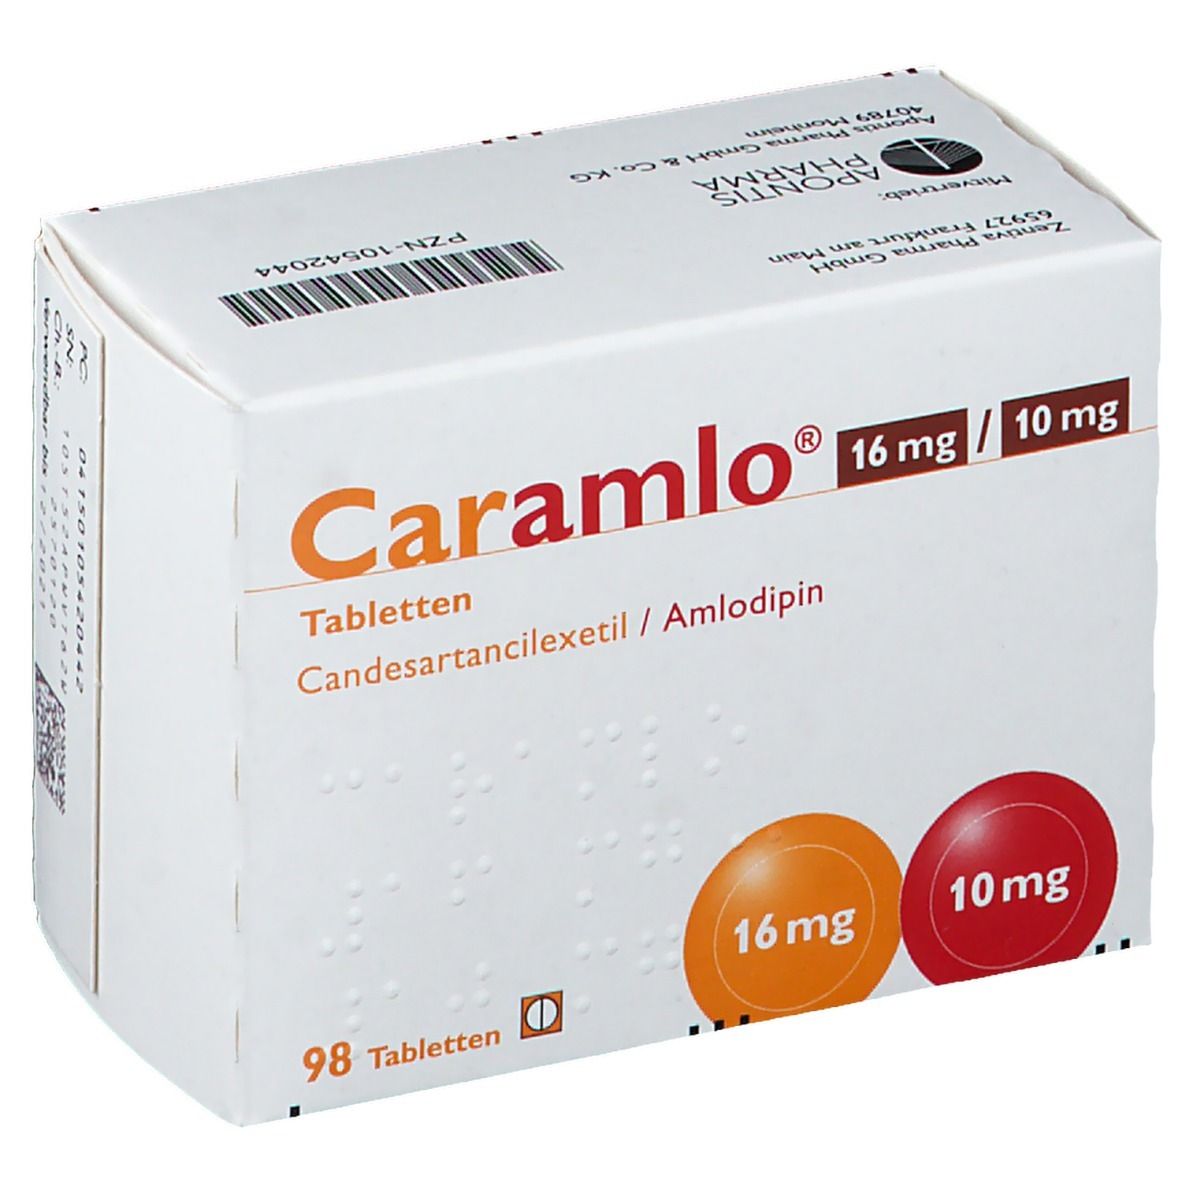 Caramlo® 16 mg/10 mg